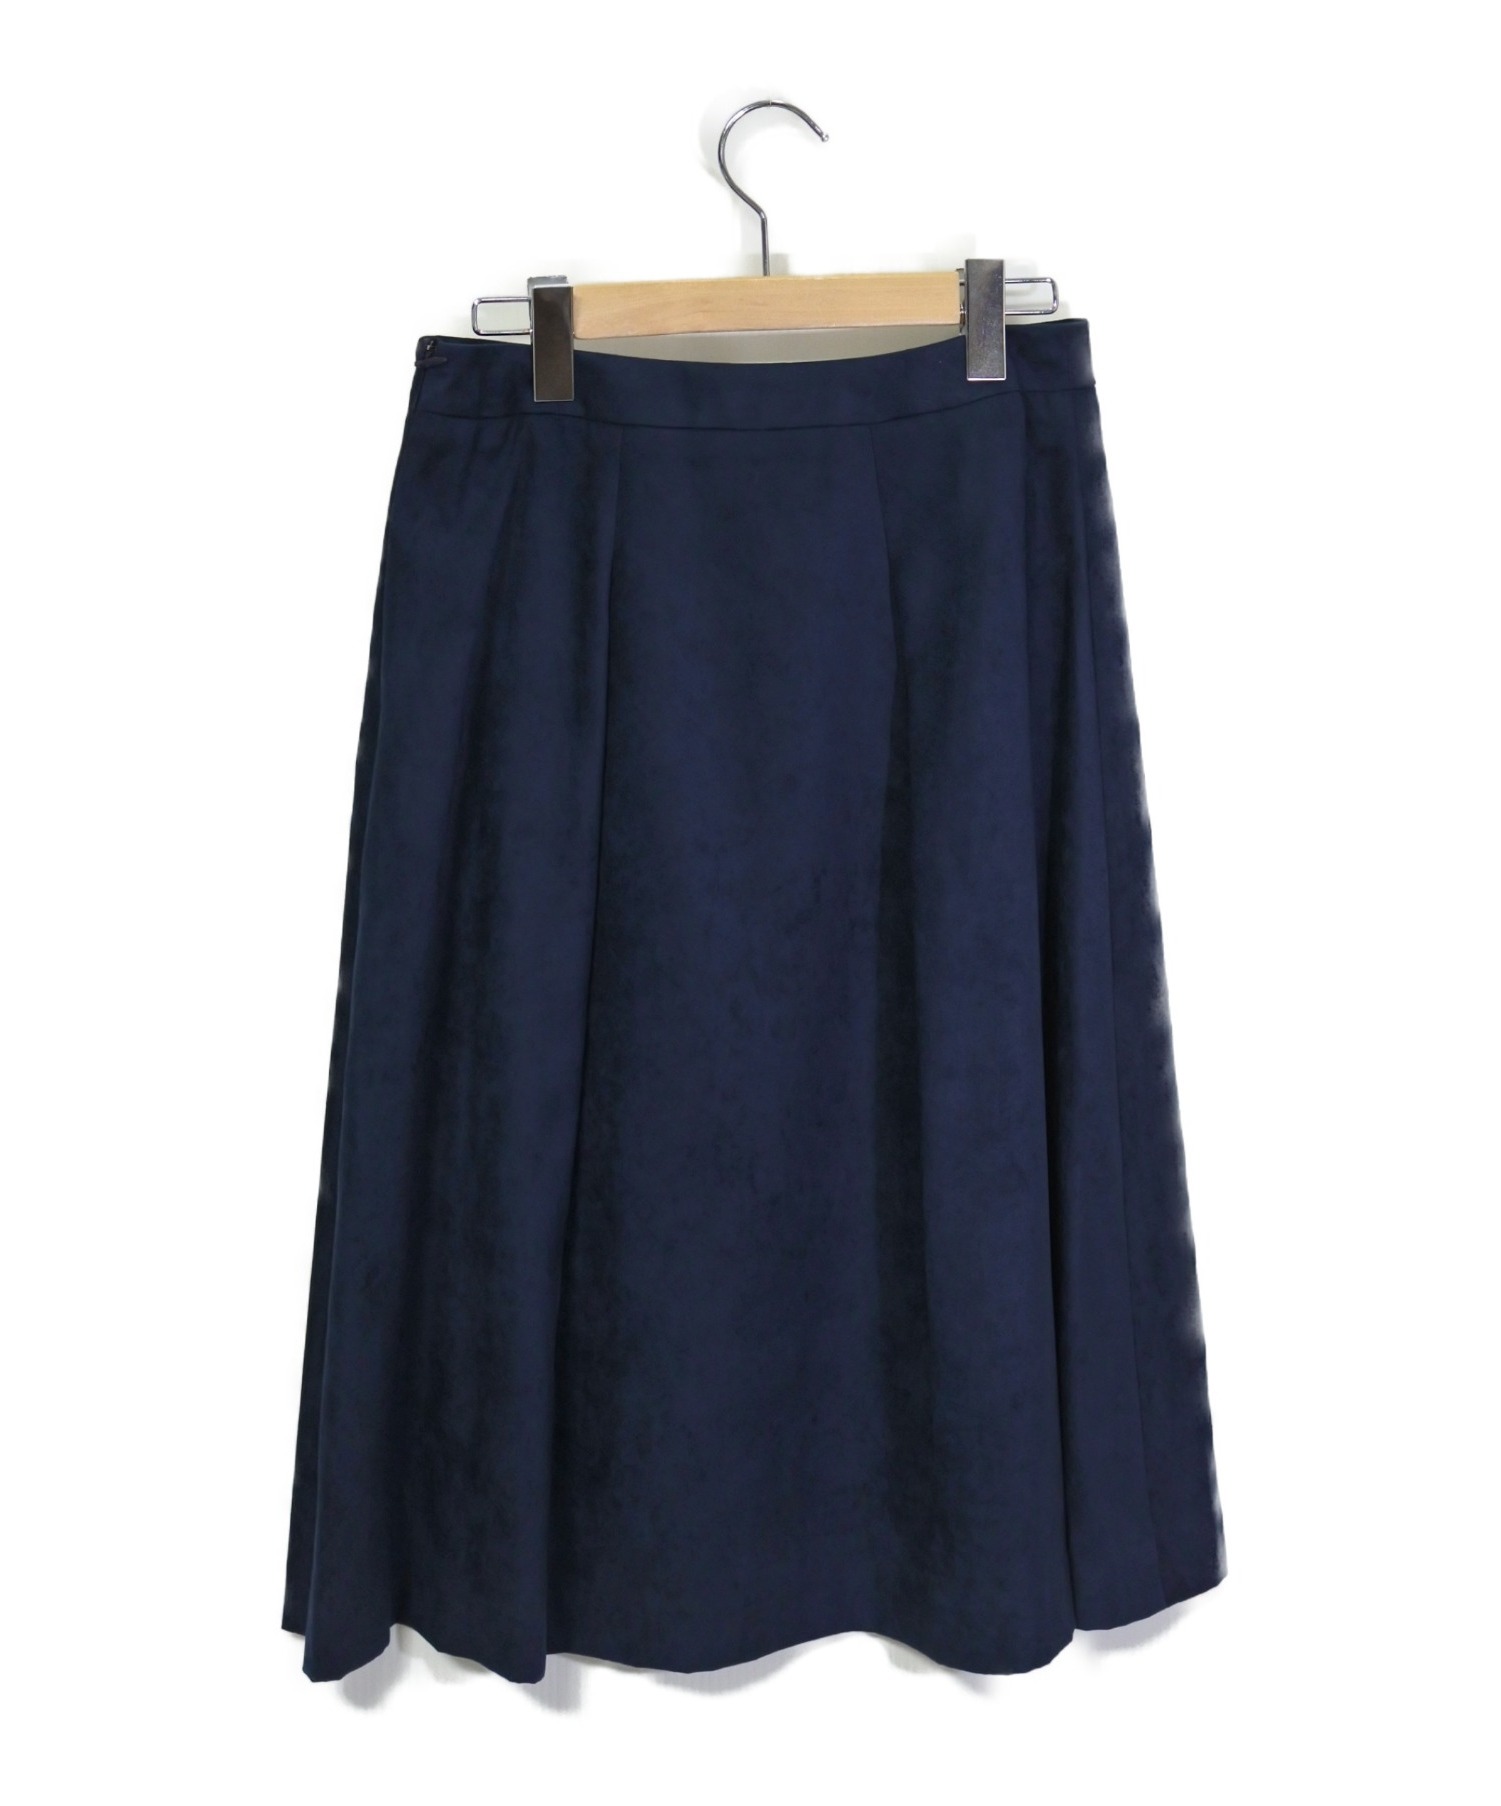 AMACA (アマカ) エルモザスカート ブルー サイズ:38 未使用品